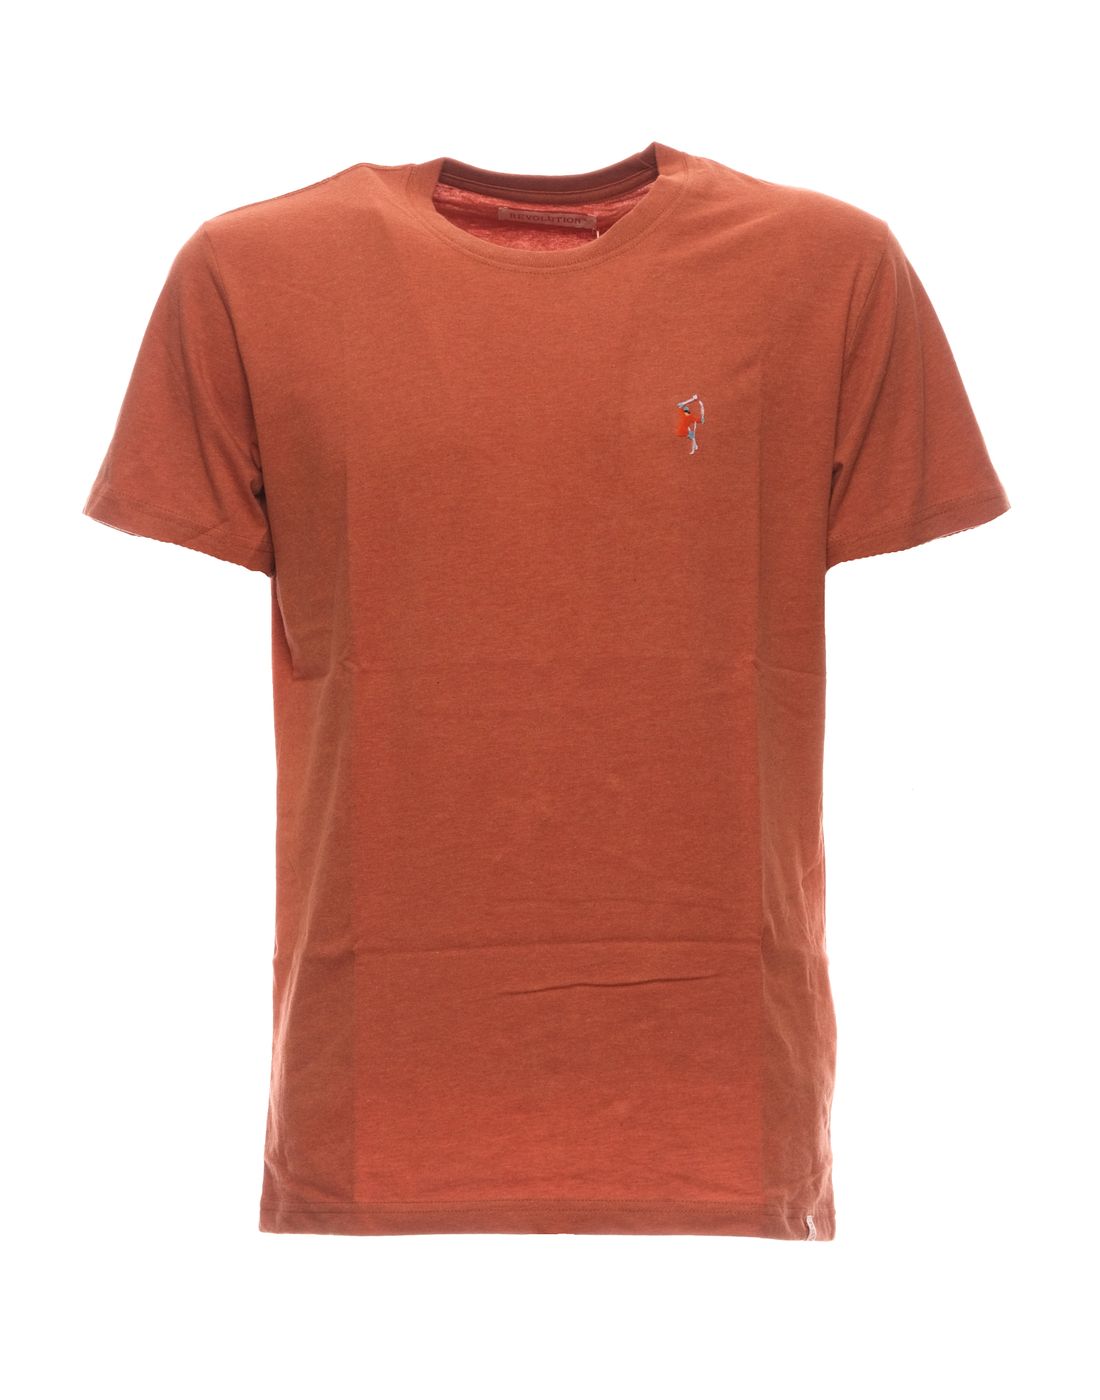 T-Shirt für Mann 1294 Orangenmel REVOLUTION